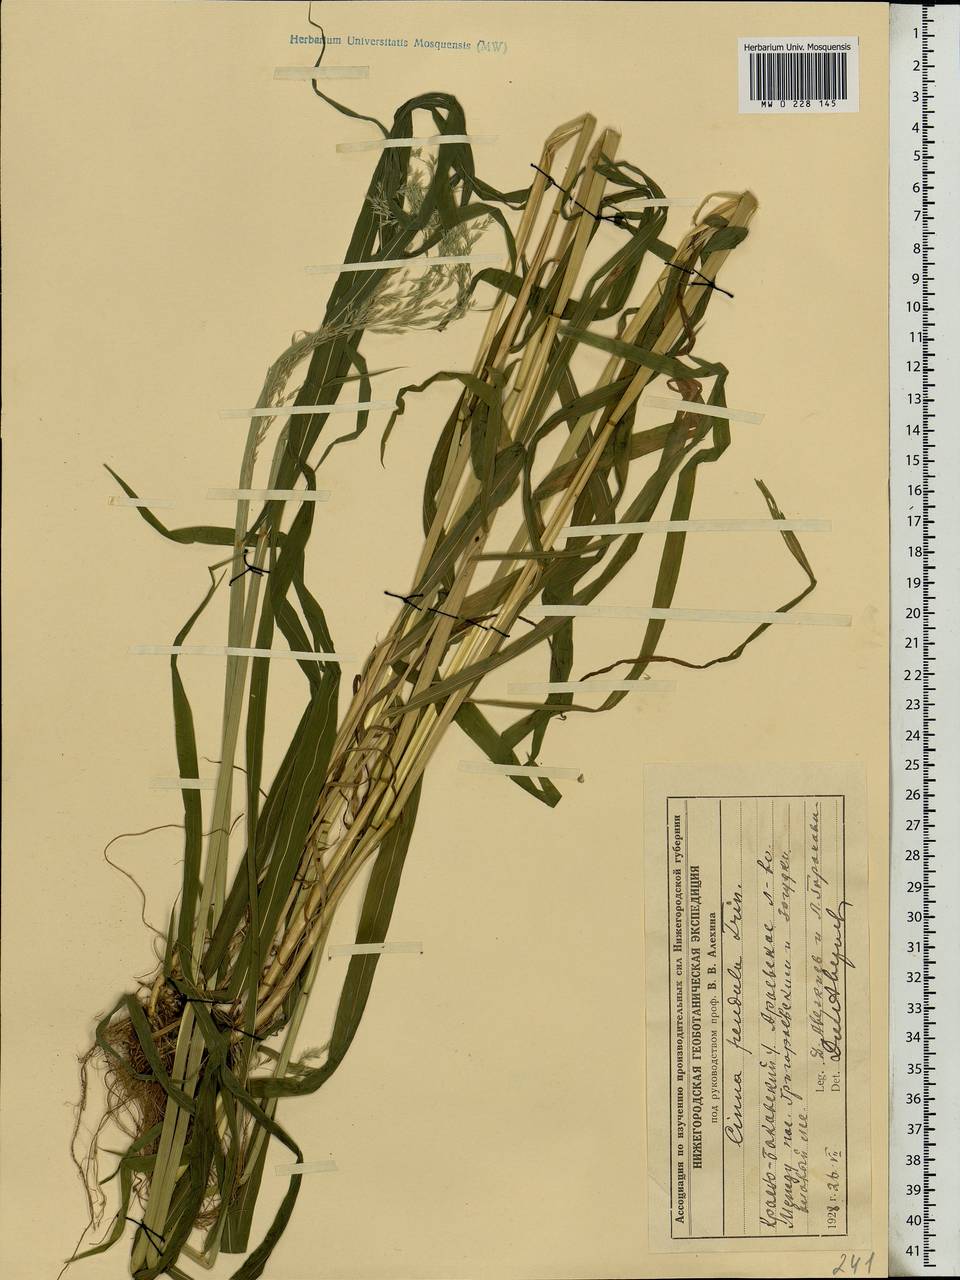 Cinna latifolia (Trevir. ex Göpp.) Griseb., Eastern Europe, Volga-Kama region (E7) (Russia)